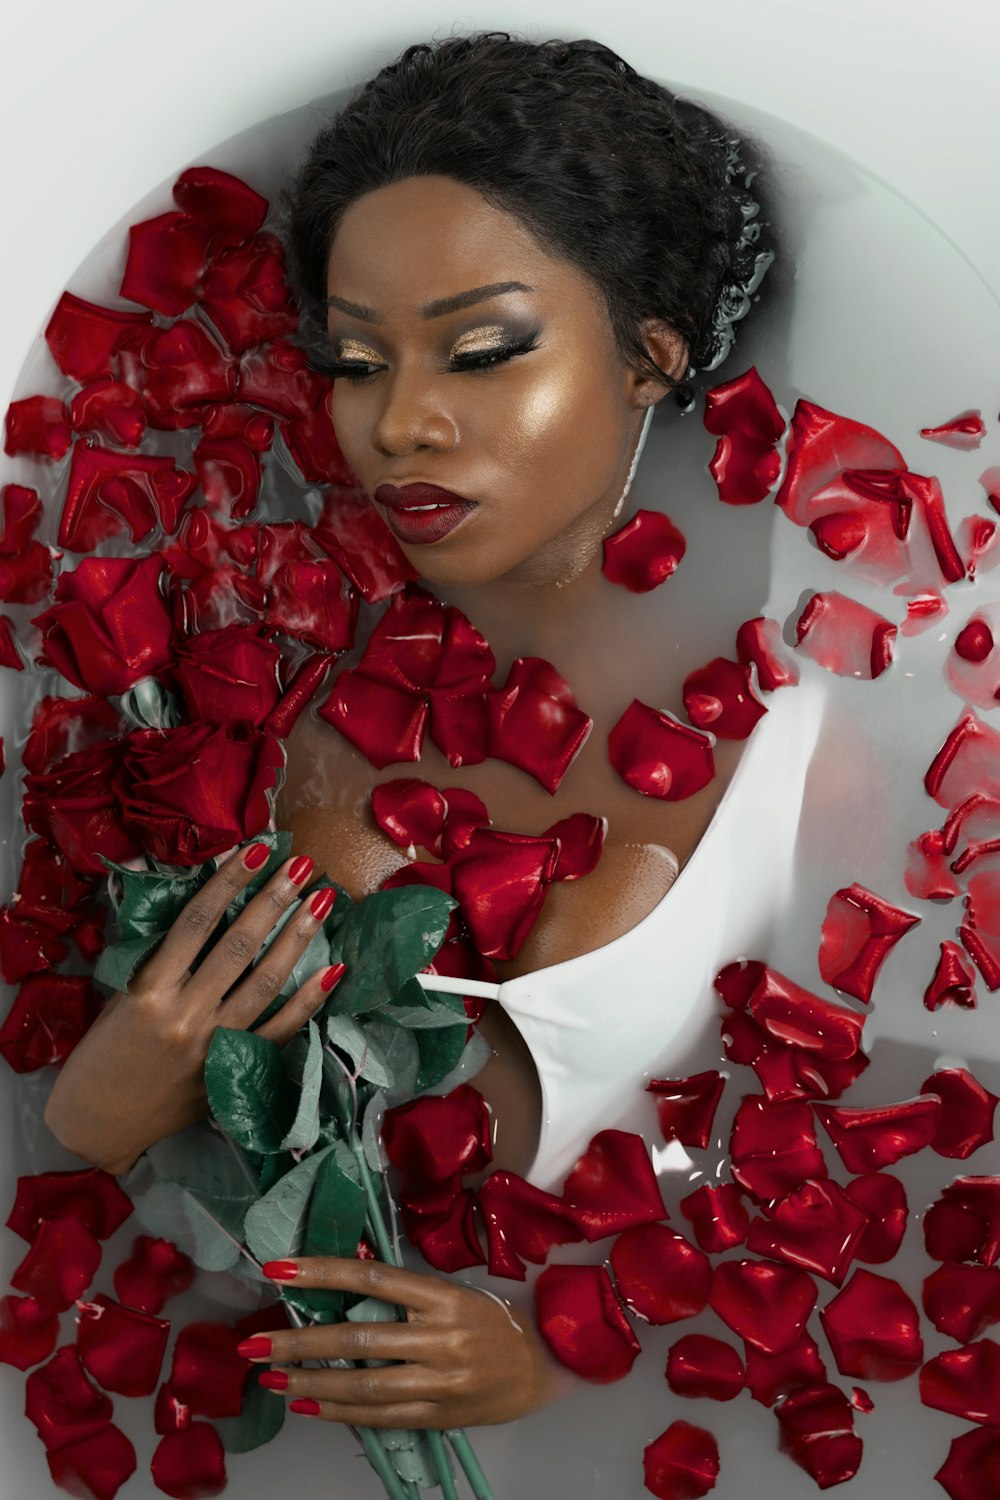 赤いバラの花びらが顔に描かれた白いタートルネックシャツを着た女性